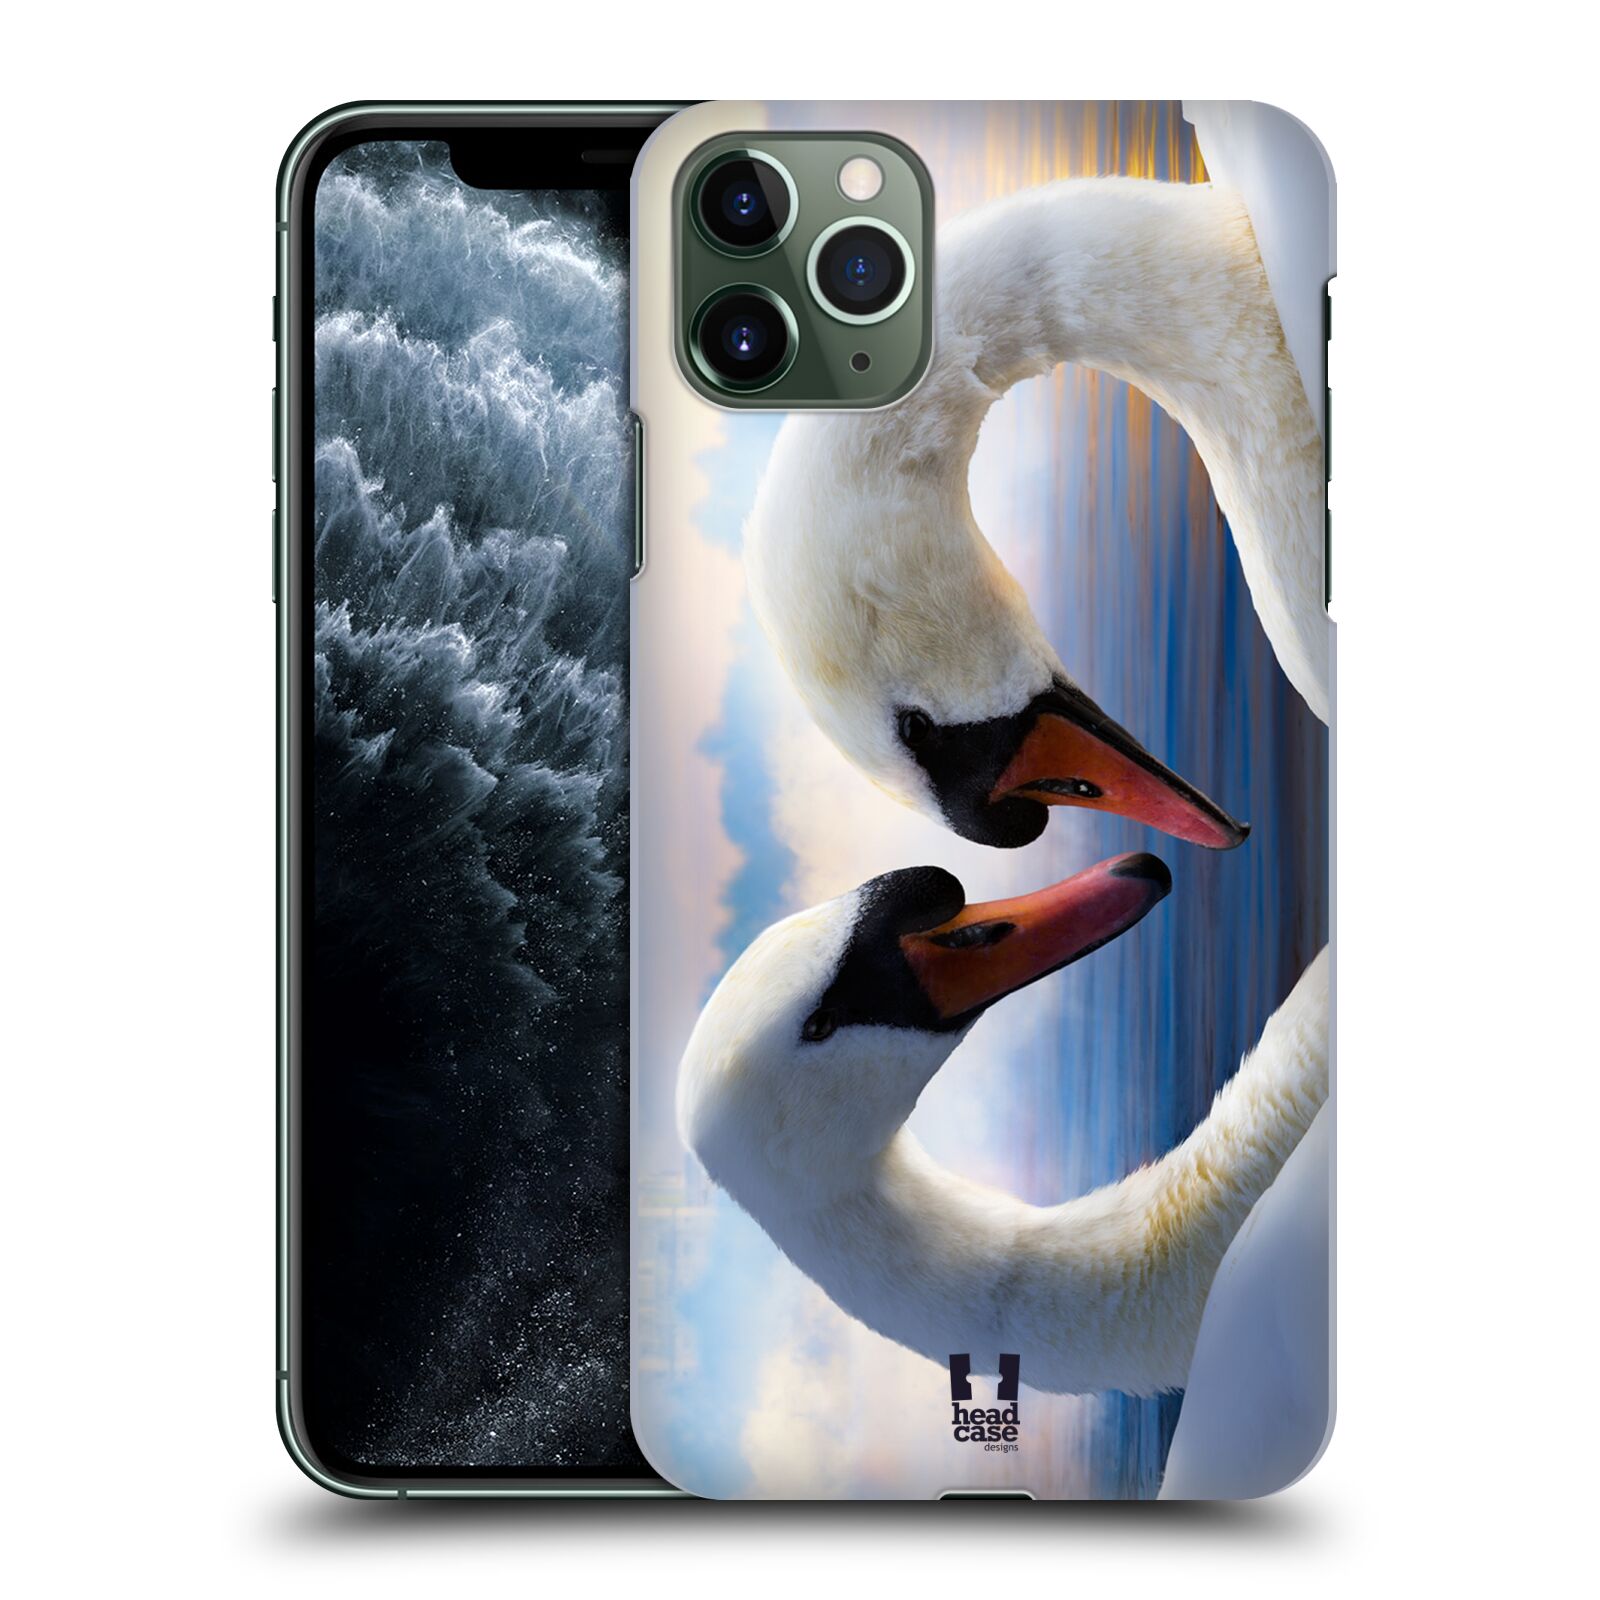 Pouzdro na mobil Apple Iphone 11 PRO MAX - HEAD CASE - vzor Divočina, Divoký život a zvířata foto ZAMILOVANÉ LABUTĚ, LÁSKA